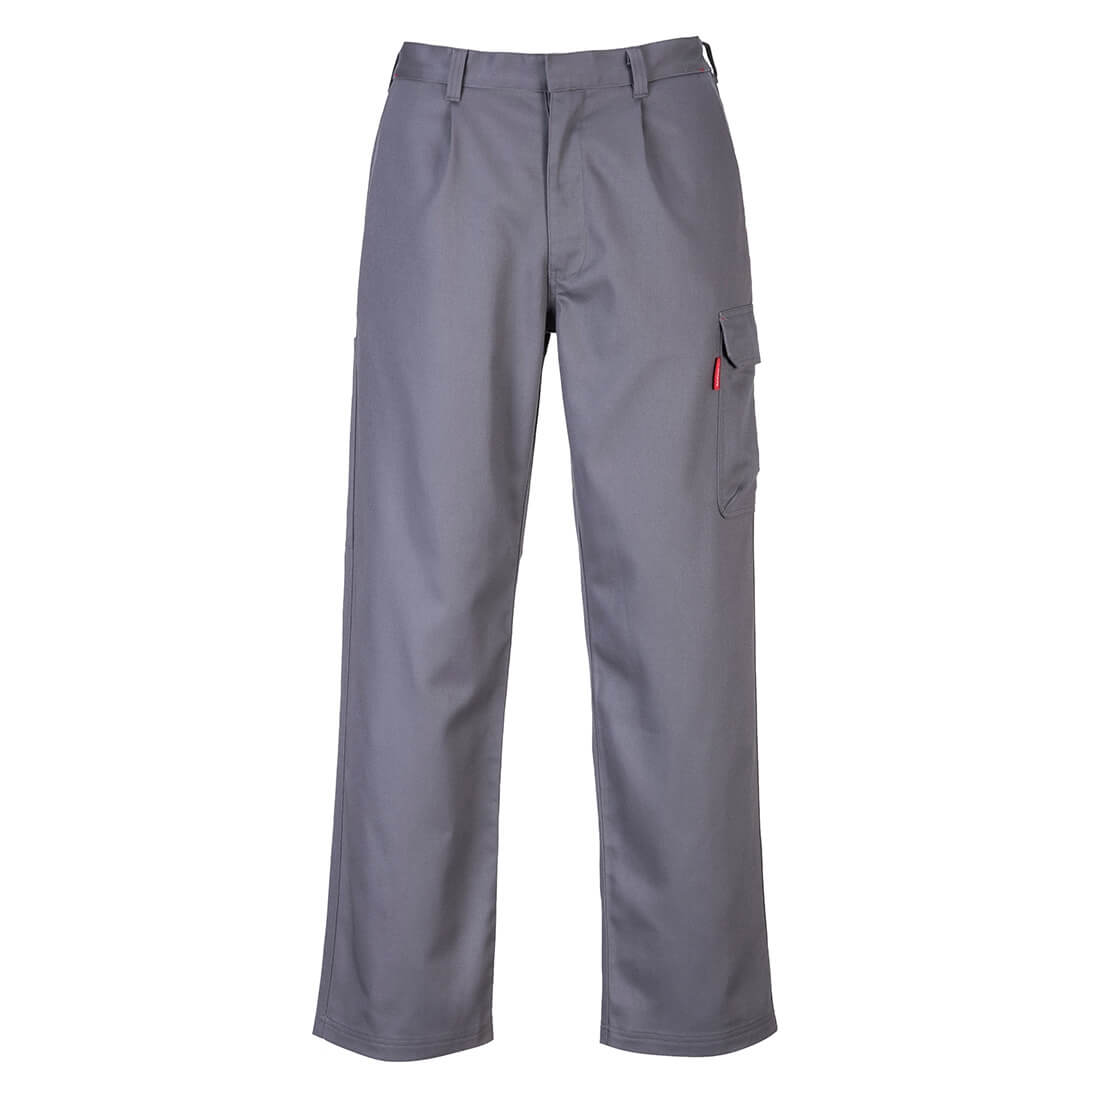 Pantalon Bizweld Cargo - Les vêtements de protection